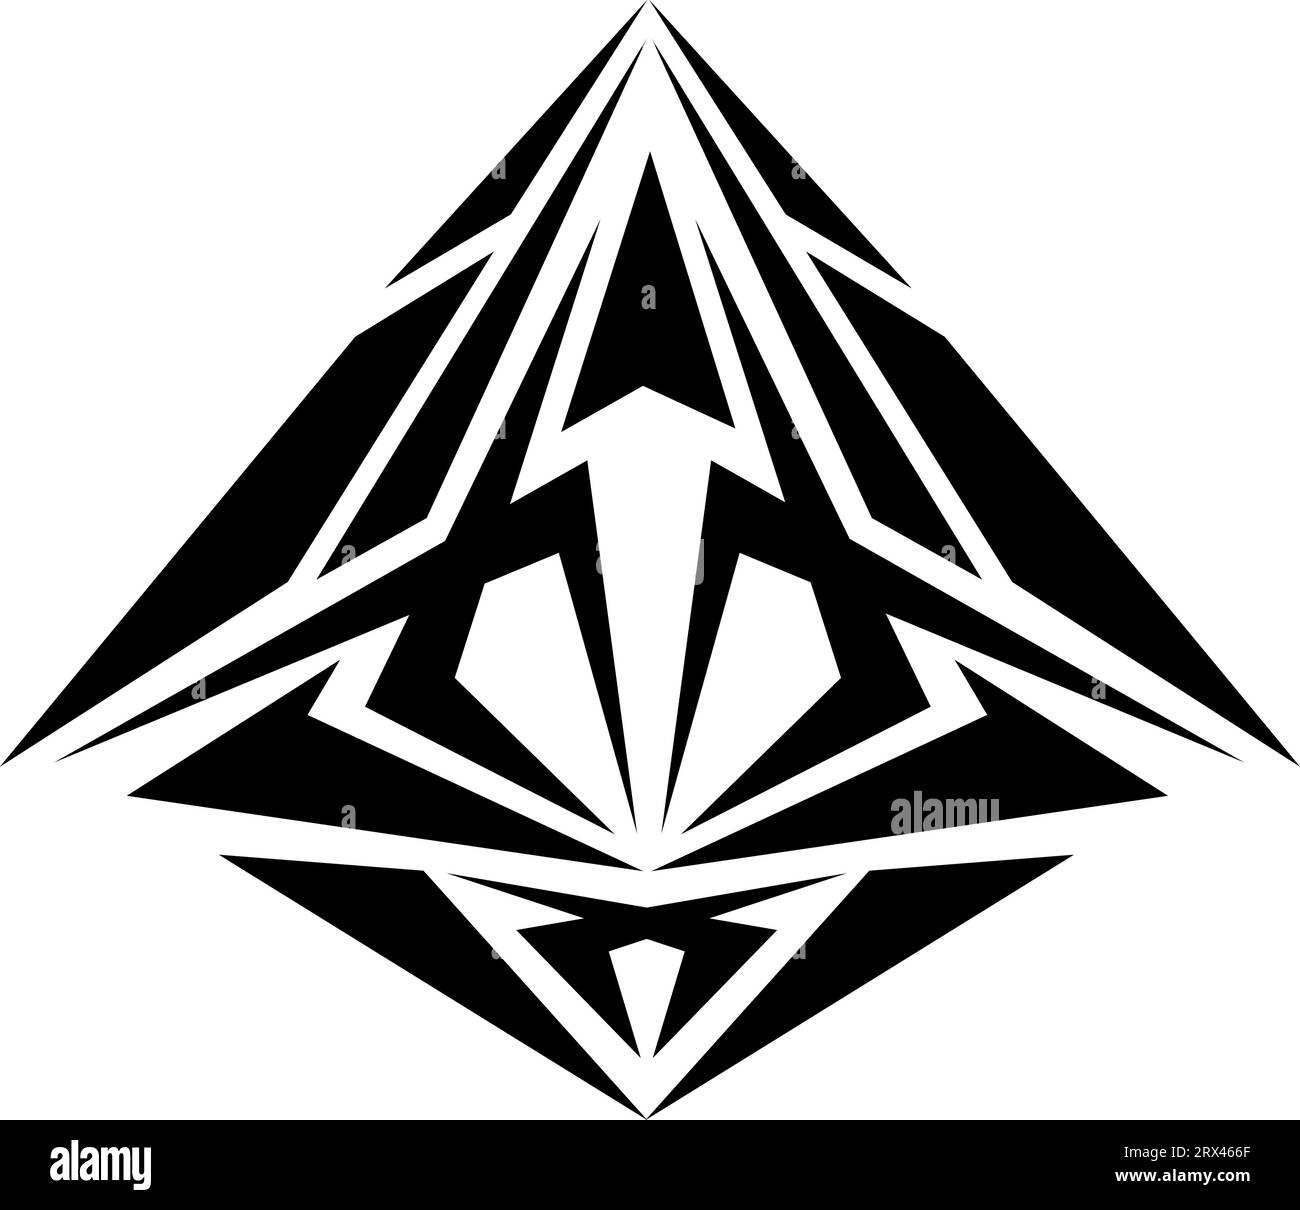 Symbol Vector 4 Simple Valknut Designs | Tatuaje de triangulo, Tatuajes  geométricos, Simbolos para tatuajes